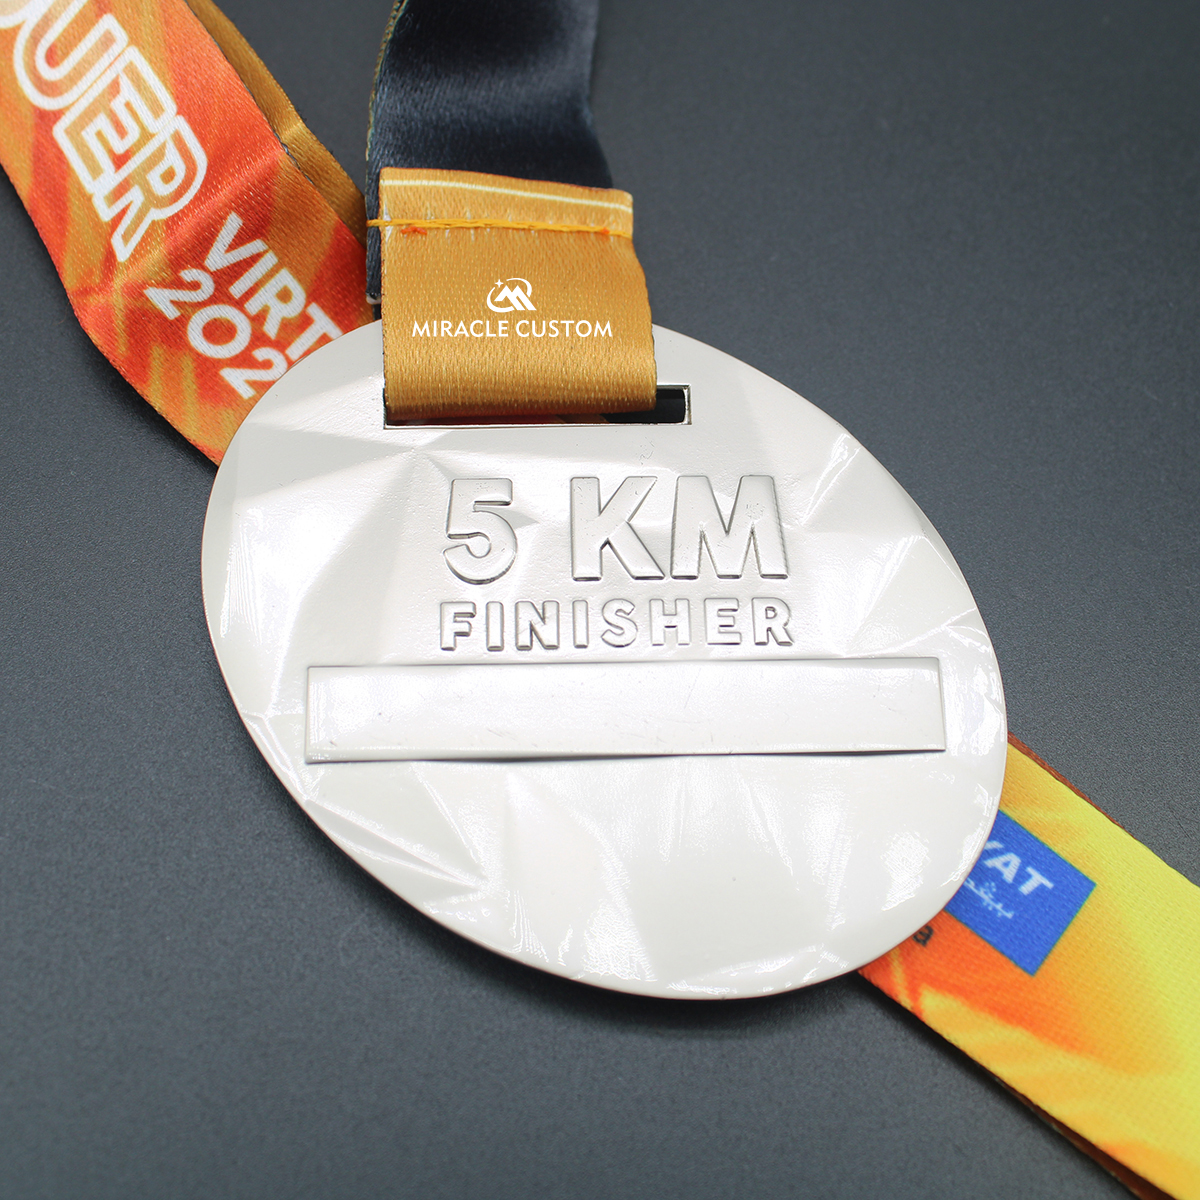 Cusotm KEBARA Rise Up and Conquer Virtual Run Medals